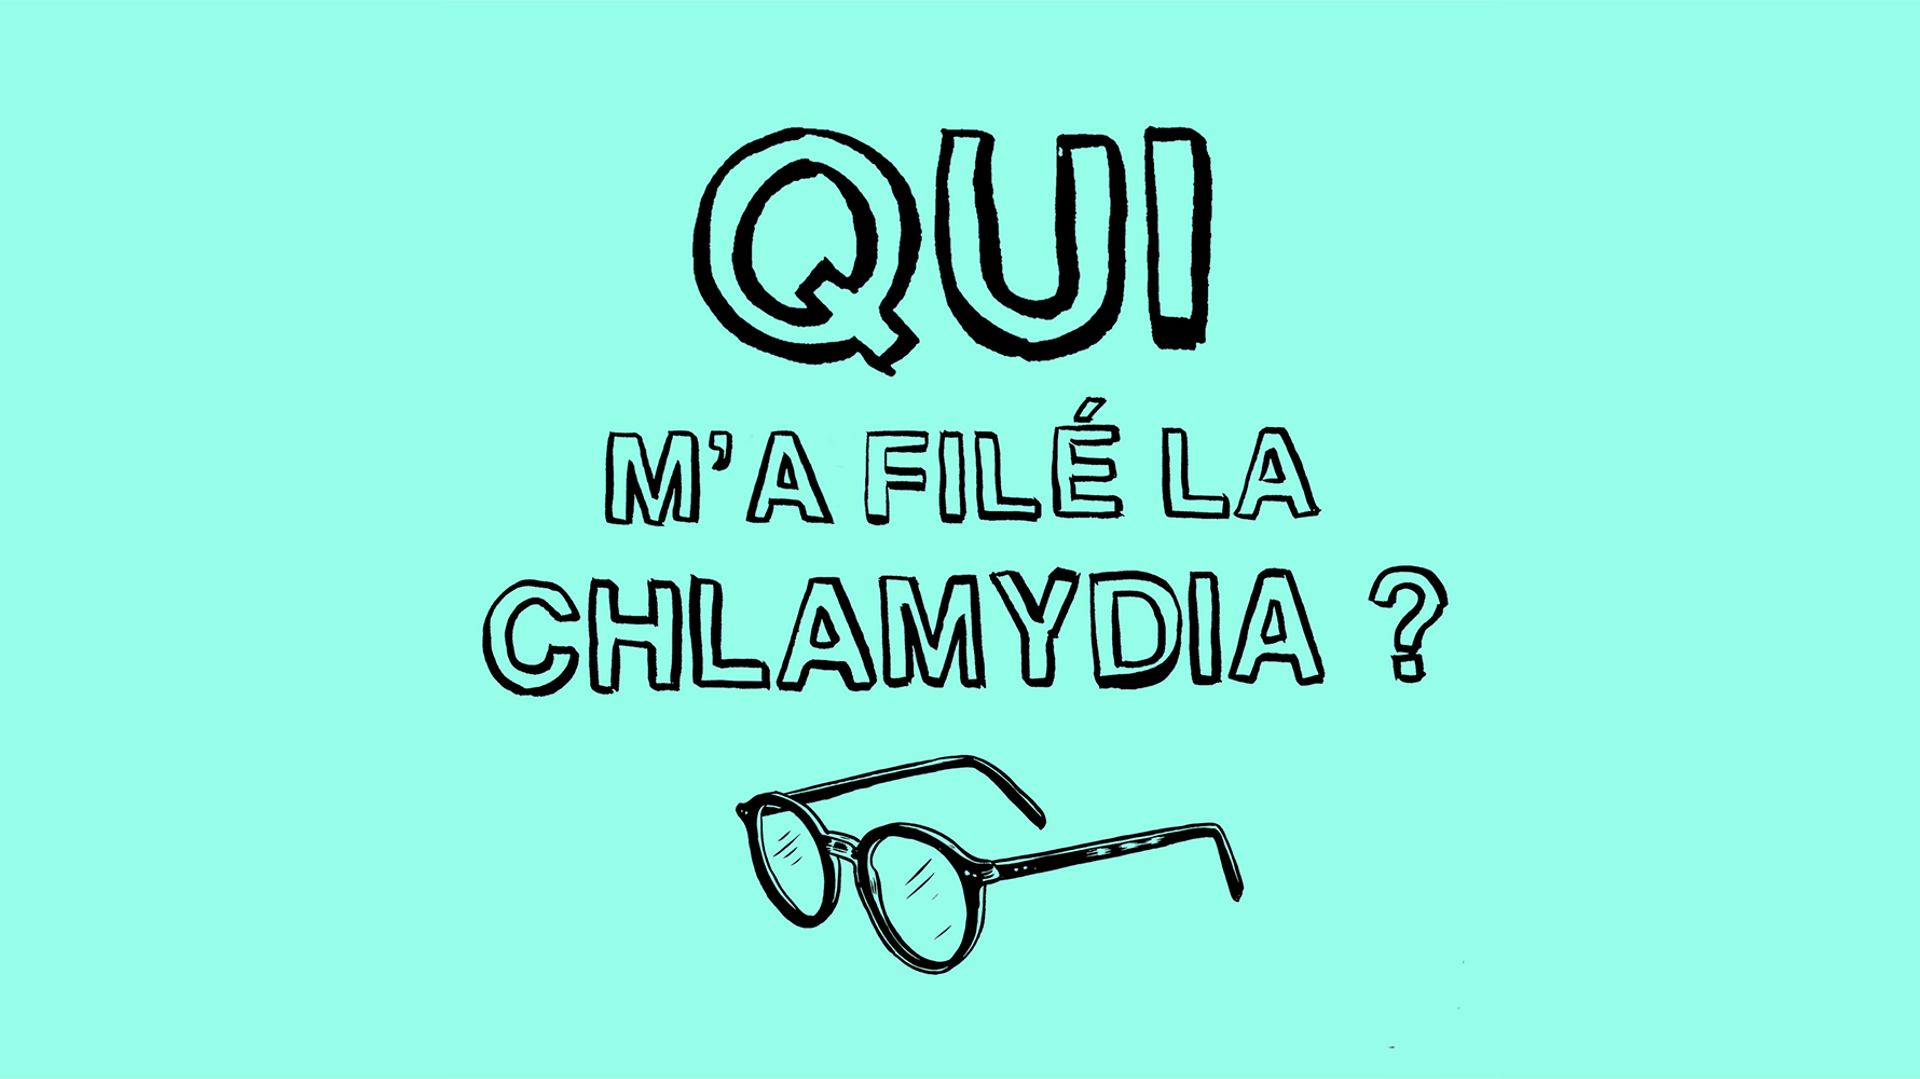 “Qui m’a filé la chlamydia ?”